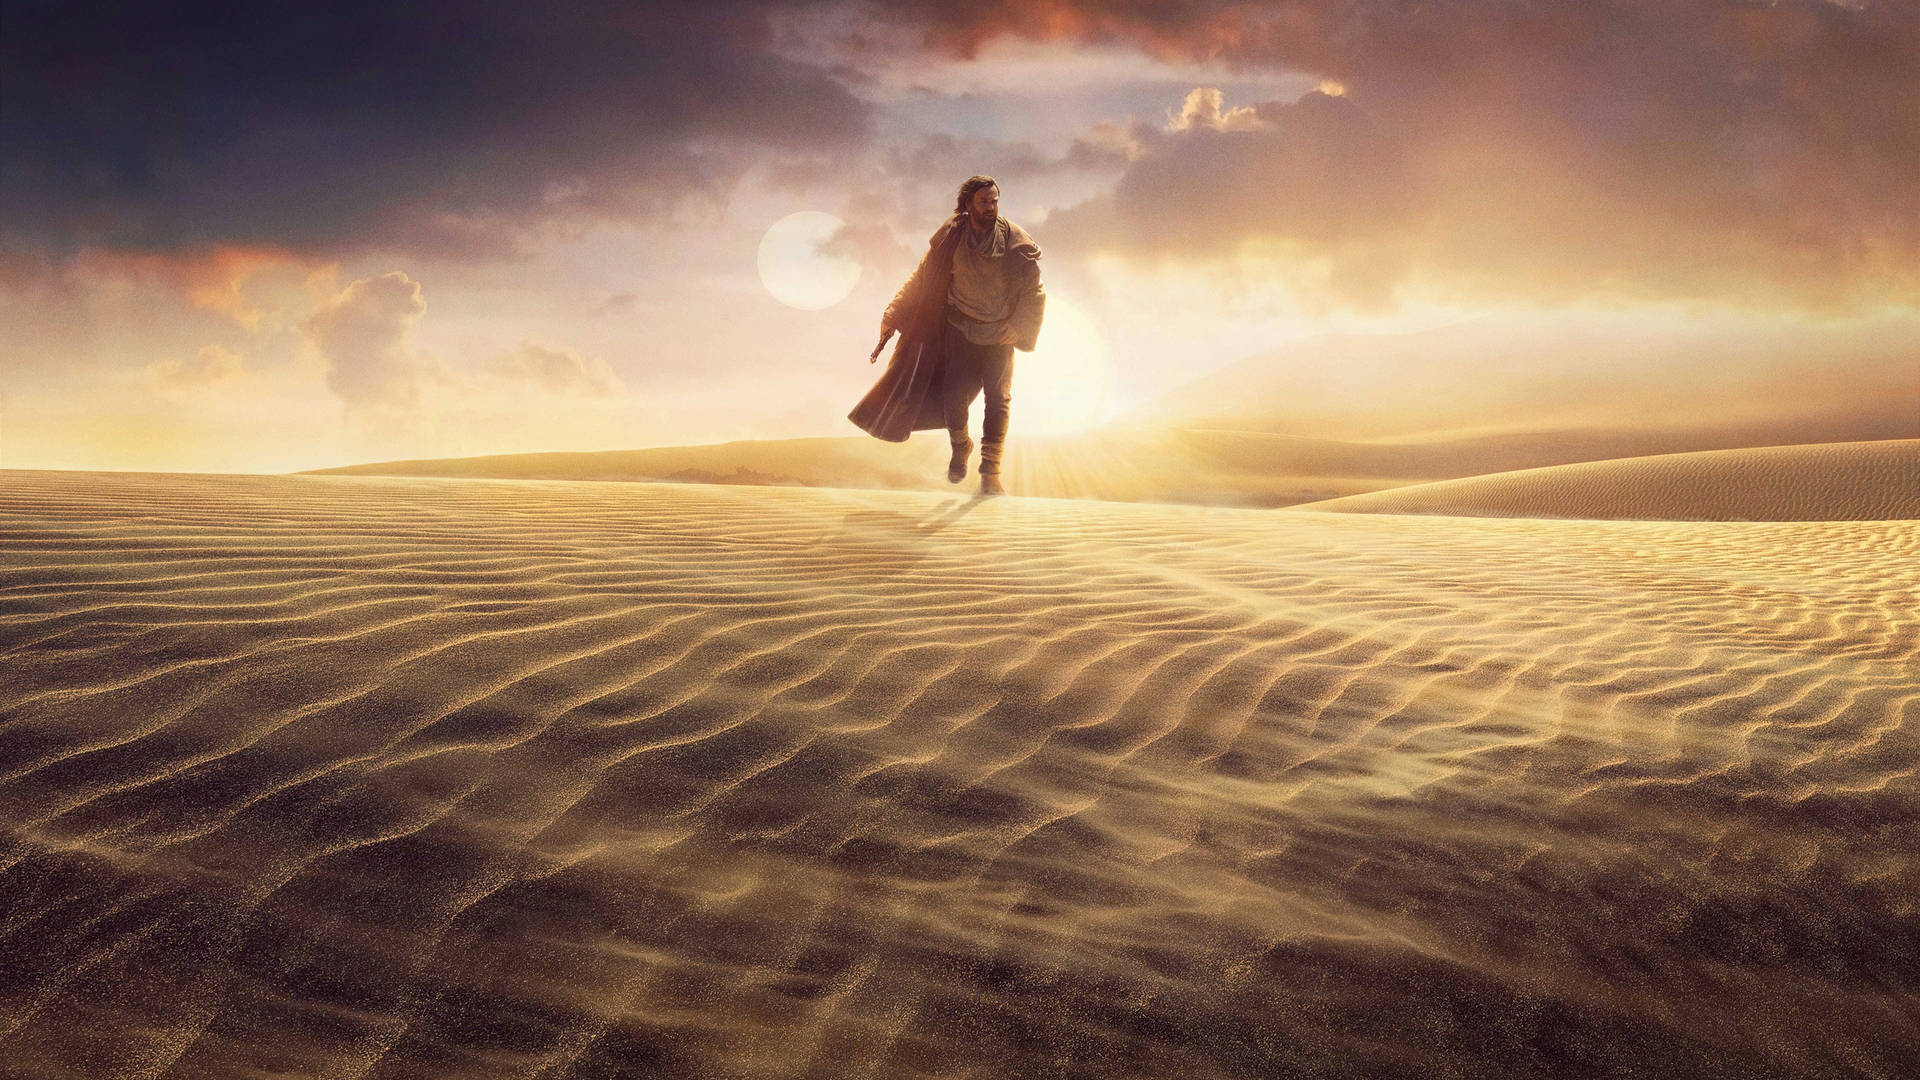 Obi Wan Kenobi Tatooine Desert Wallpaper